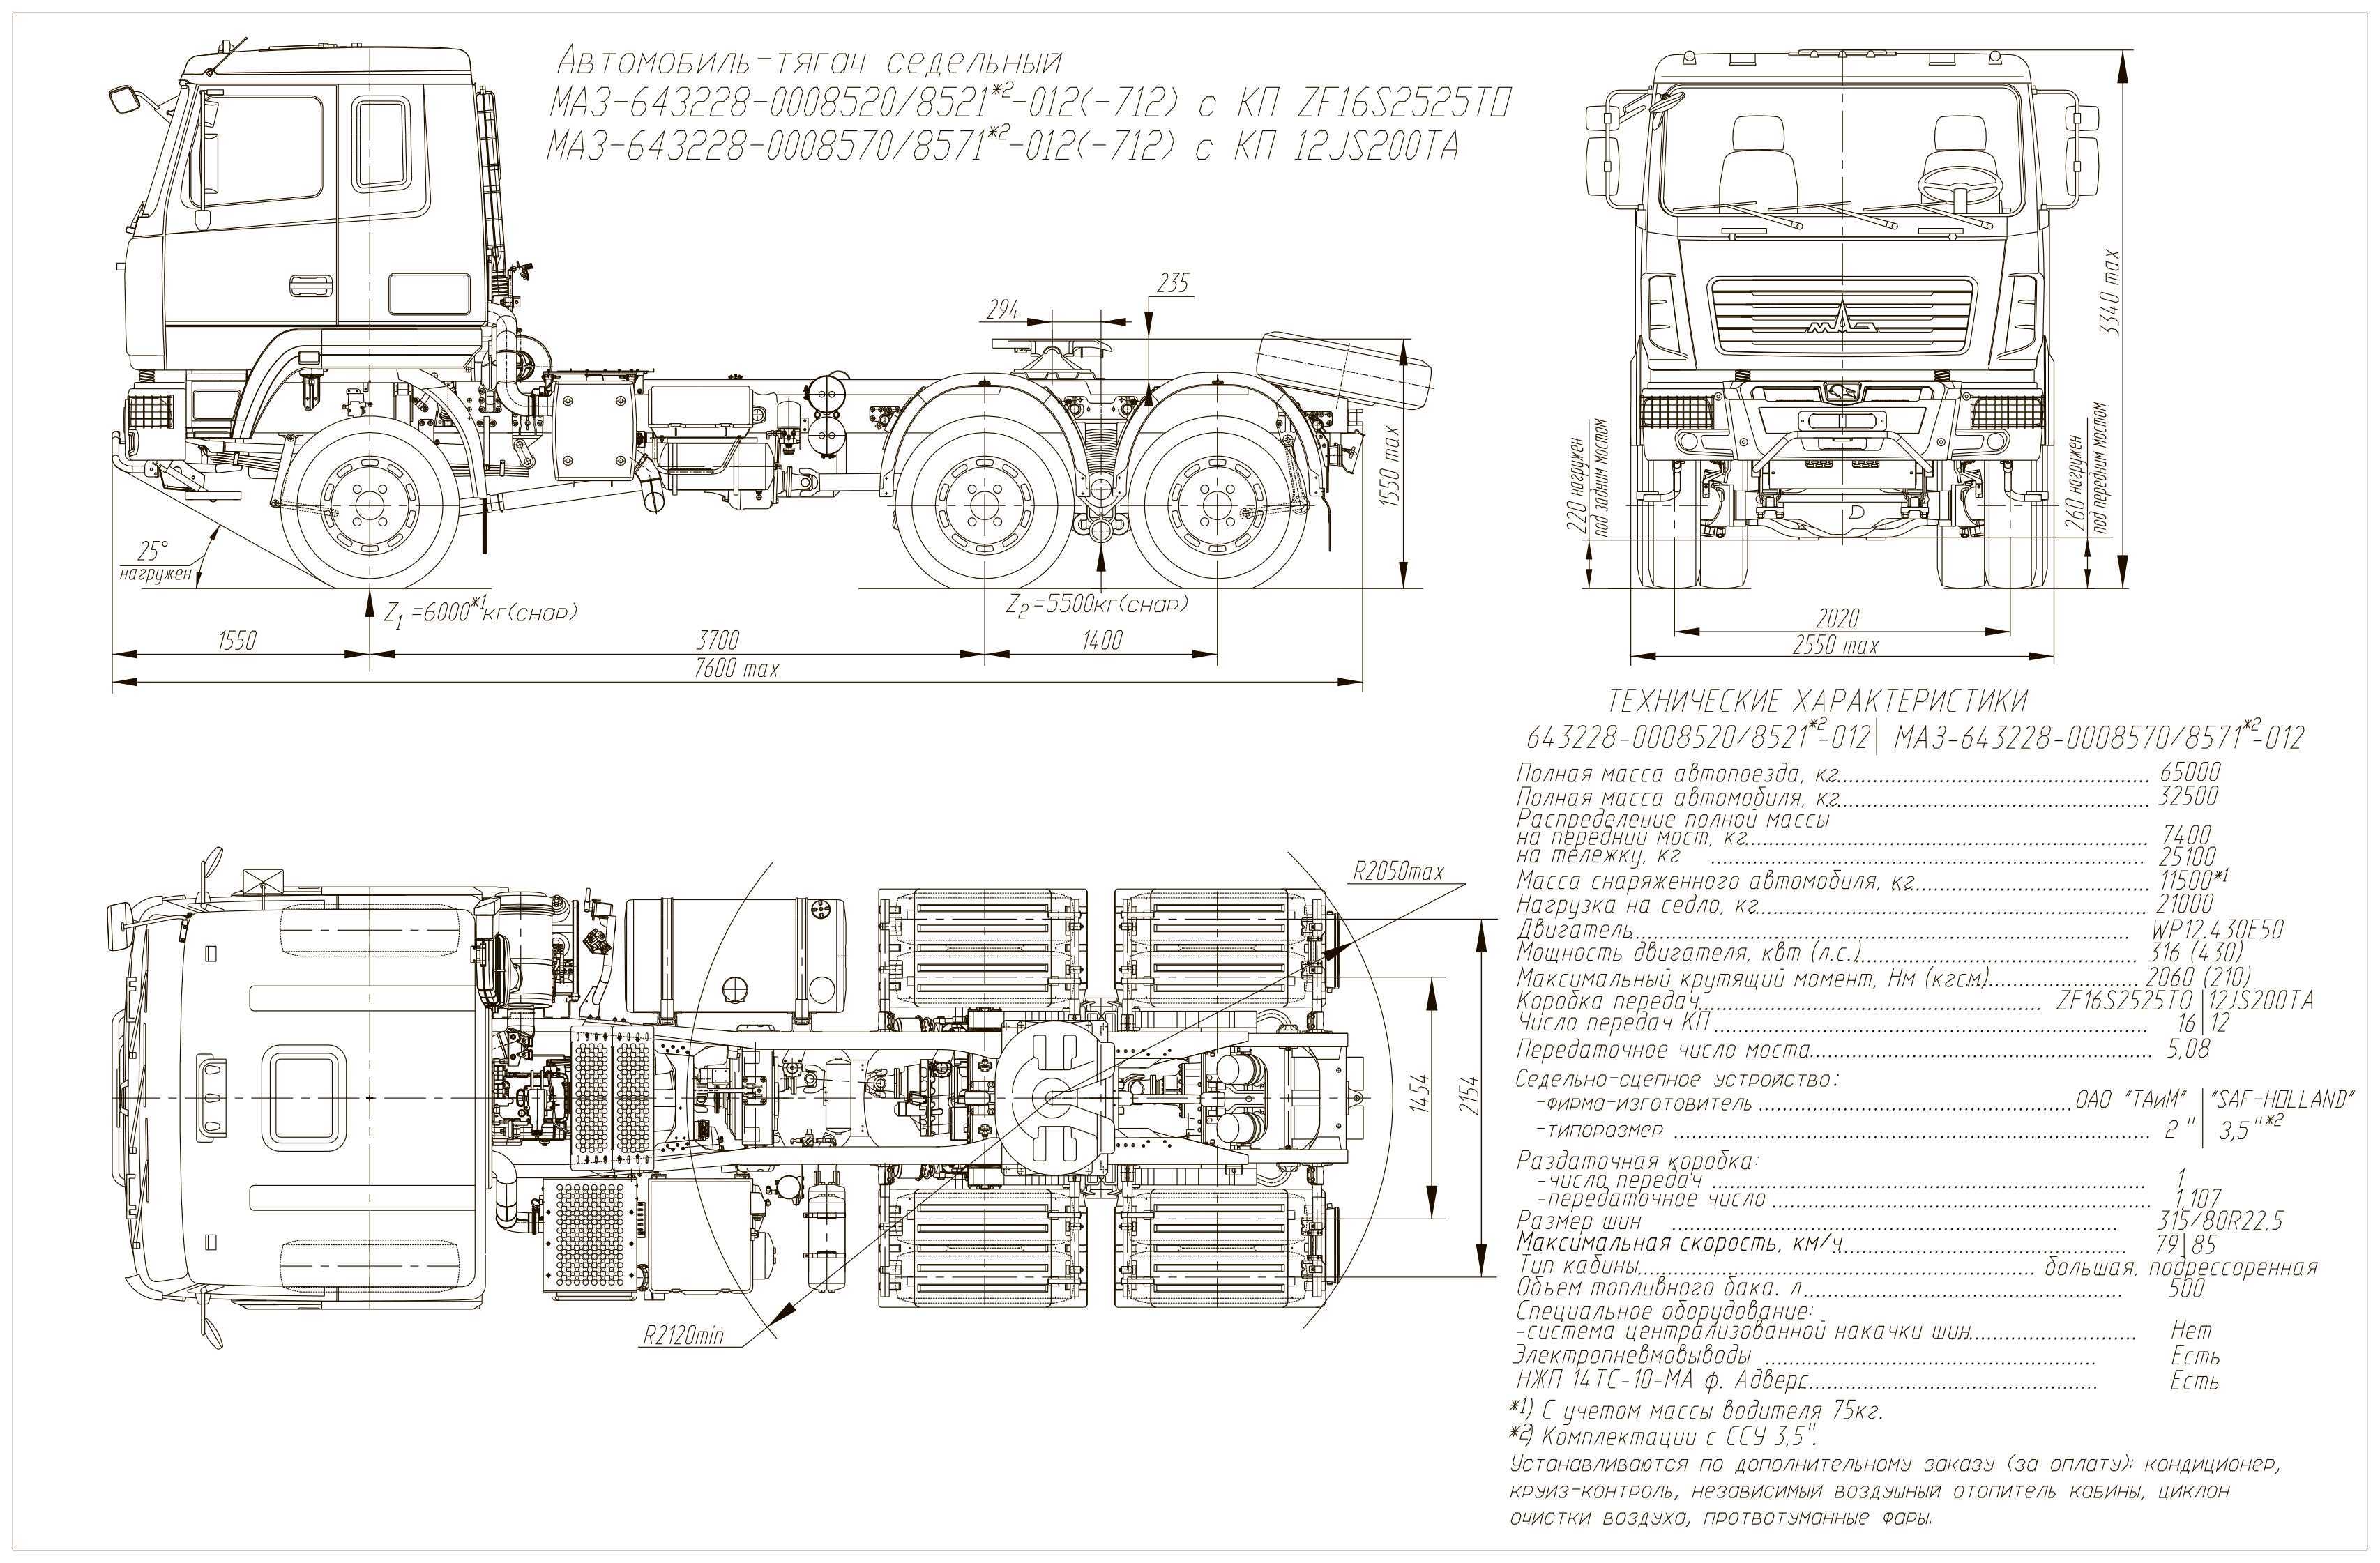 Маз-500: технические характеристики, двигатель, кпп, рулевое управление, кабина